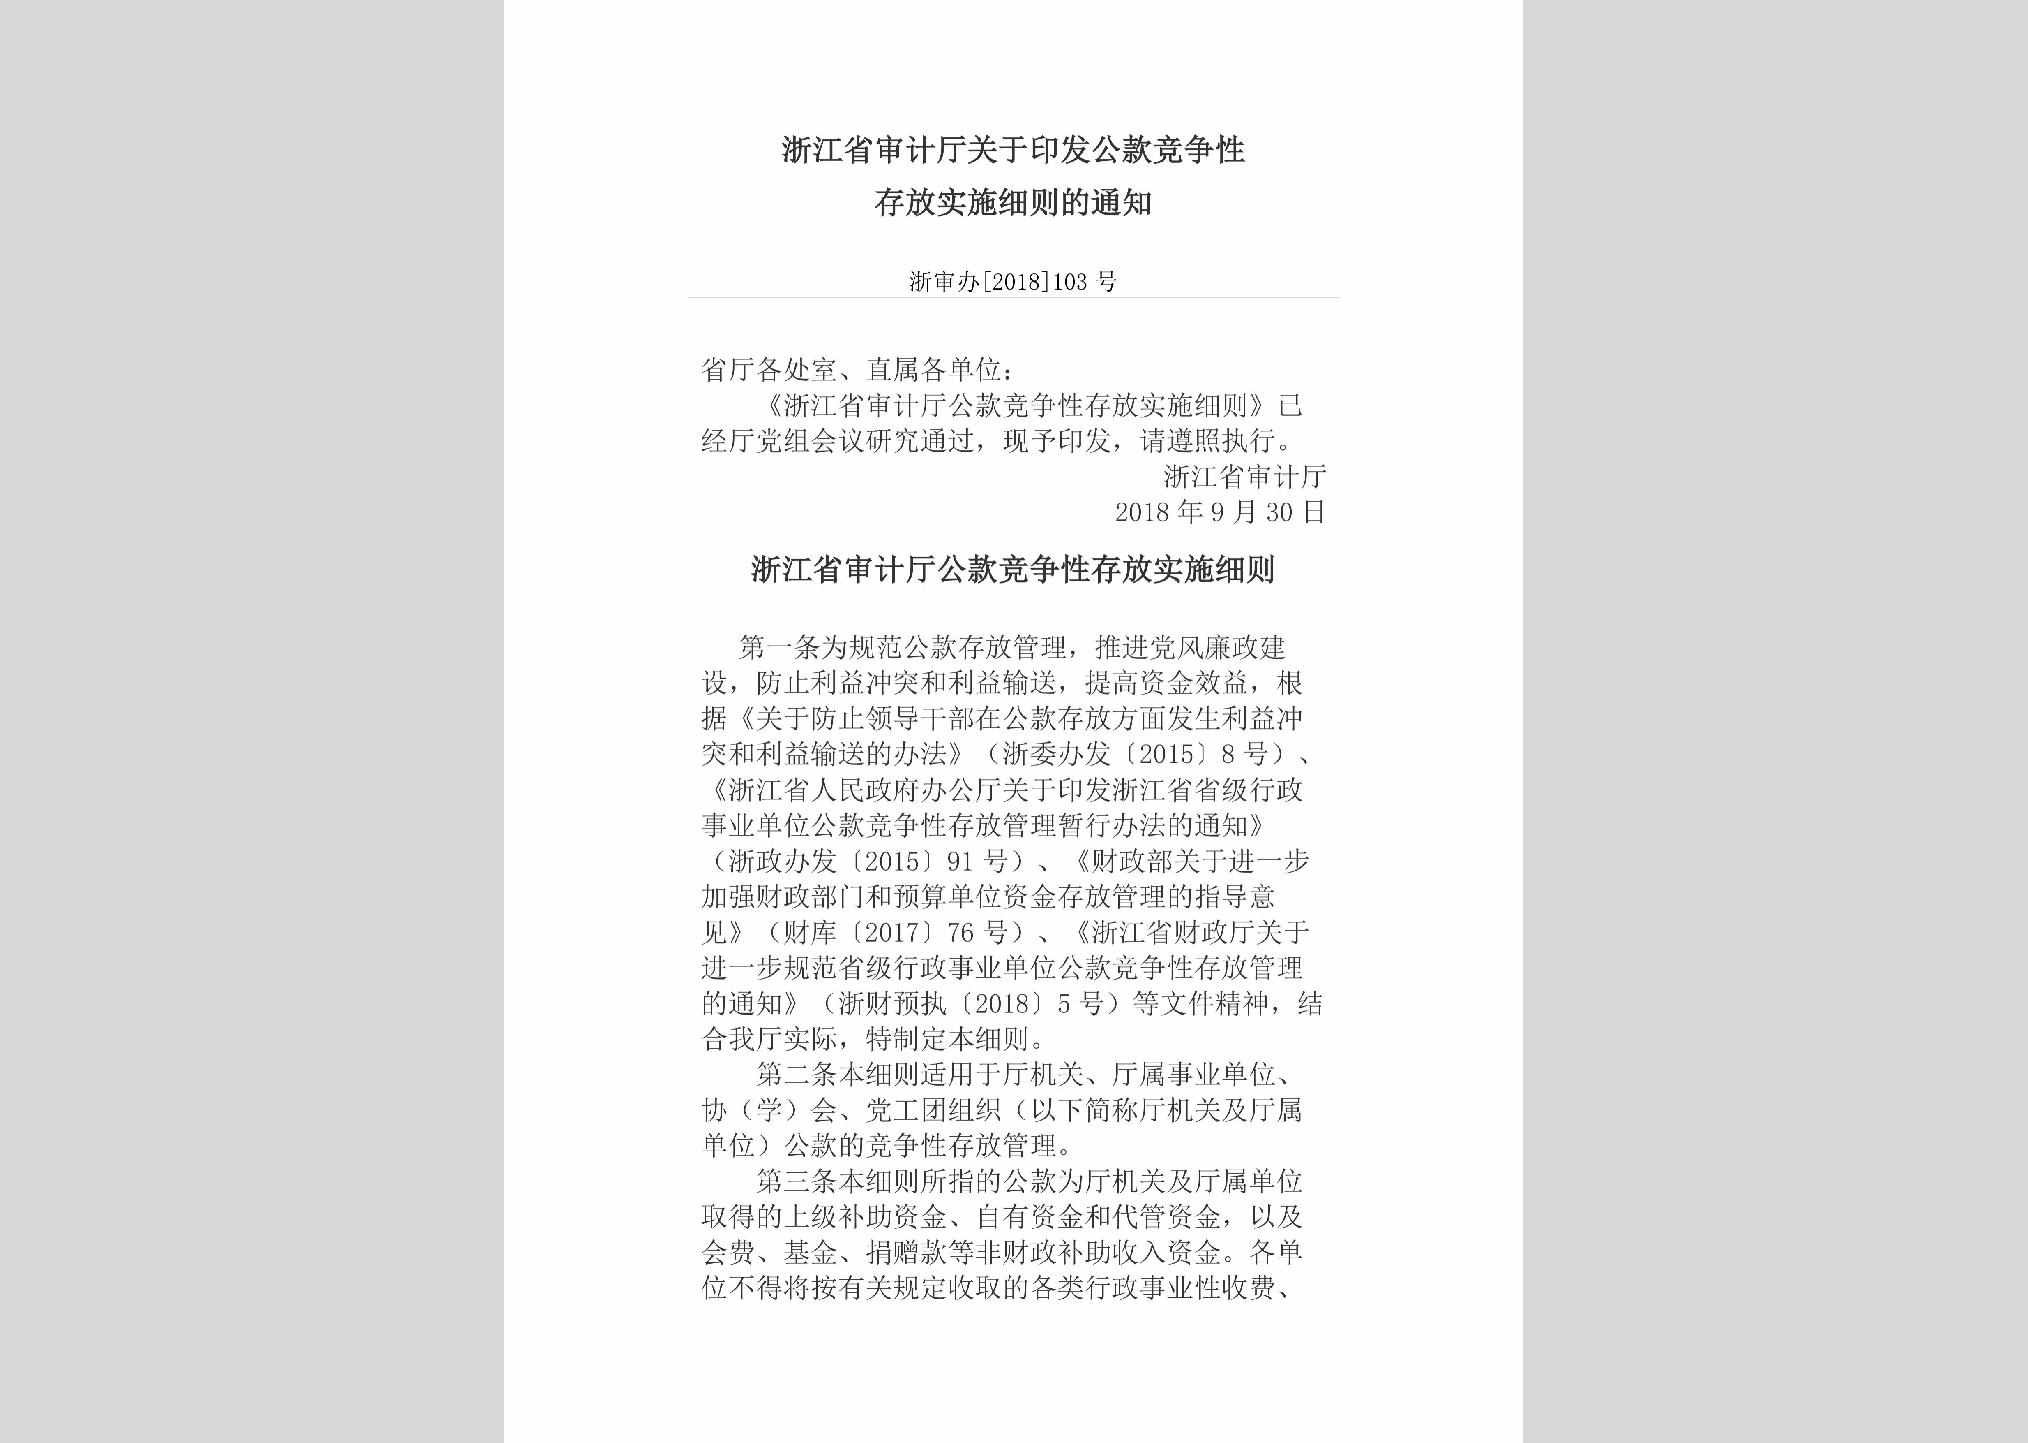 浙审办[2018]103号：浙江省审计厅关于印发公款竞争性存放实施细则的通知